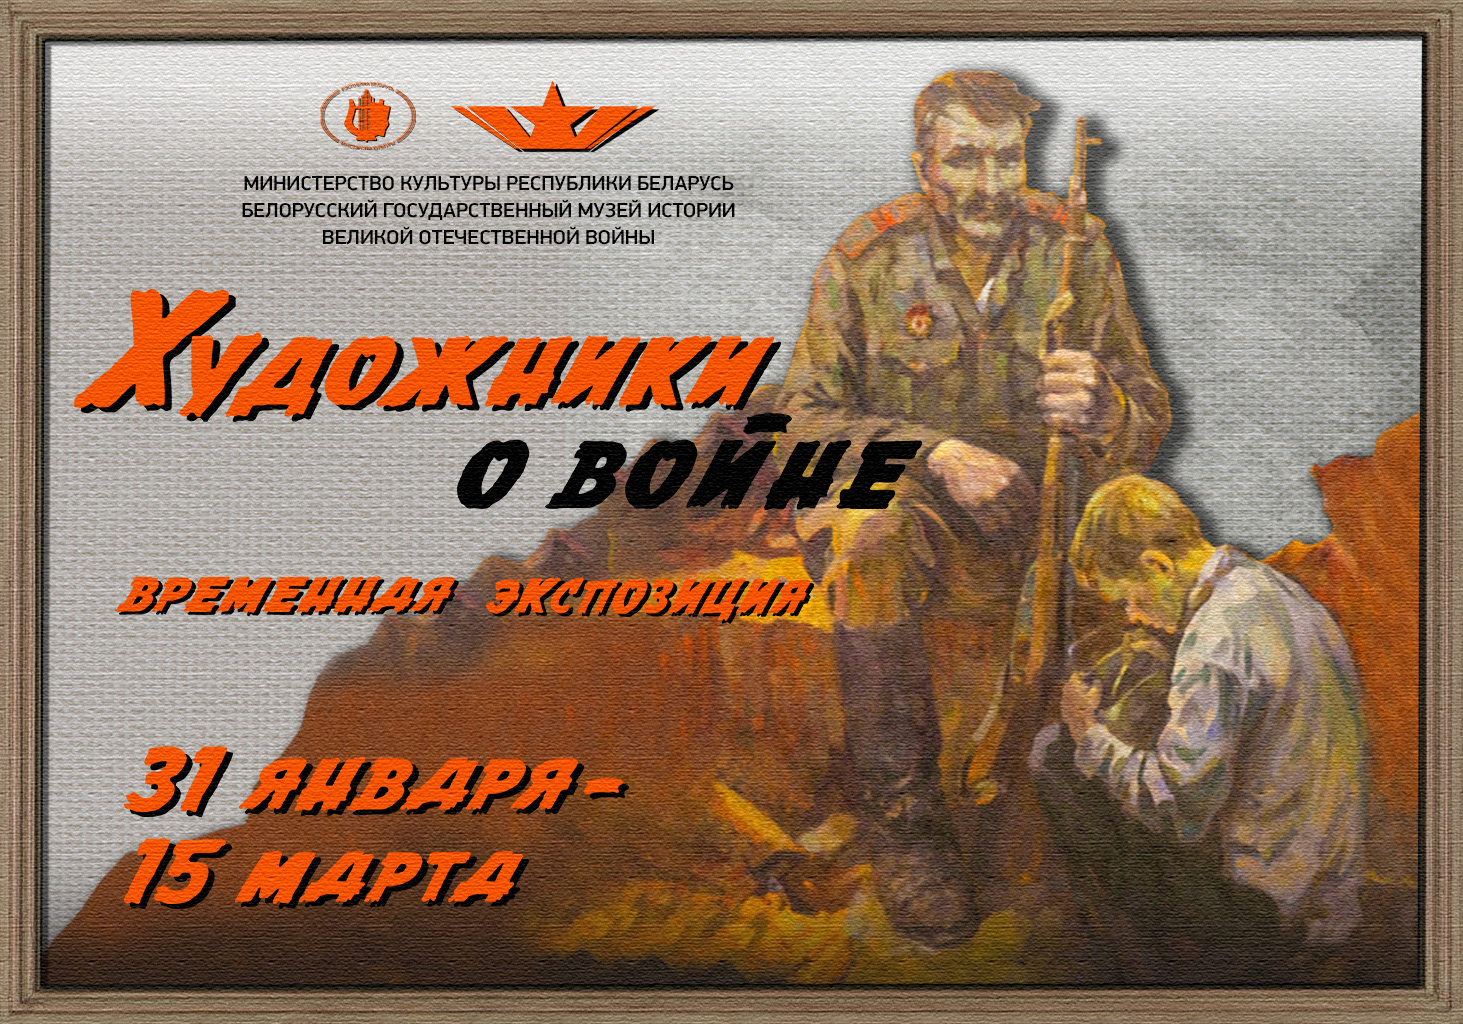 31 января состоится открытие выставки "Художники о войне"